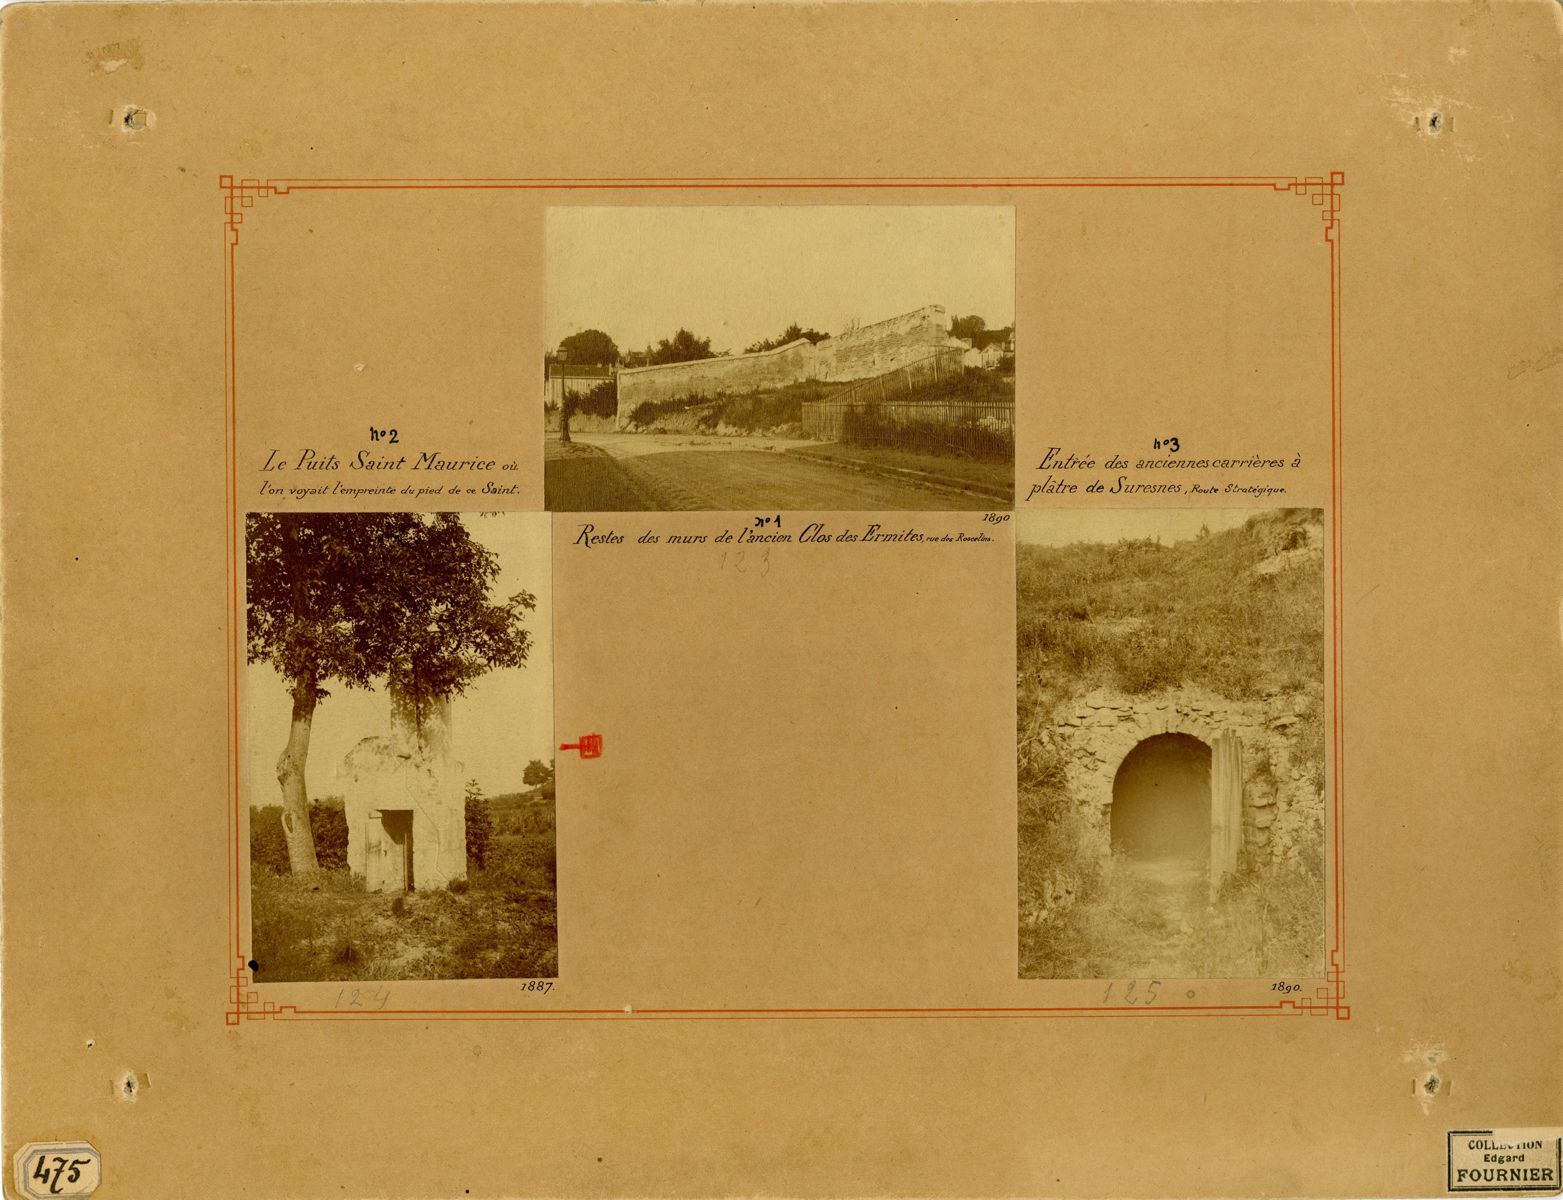 Le puits Saint Maurice en 1887 où l'on voyait l'empreinte du pied de ce saint ; Les restes des murs de l'ancien Clos des Ermites, rue des Roscelins en 1890 ; L'entrée des anciennes carrières à plâtre de Suresnes route stratégique en 1890